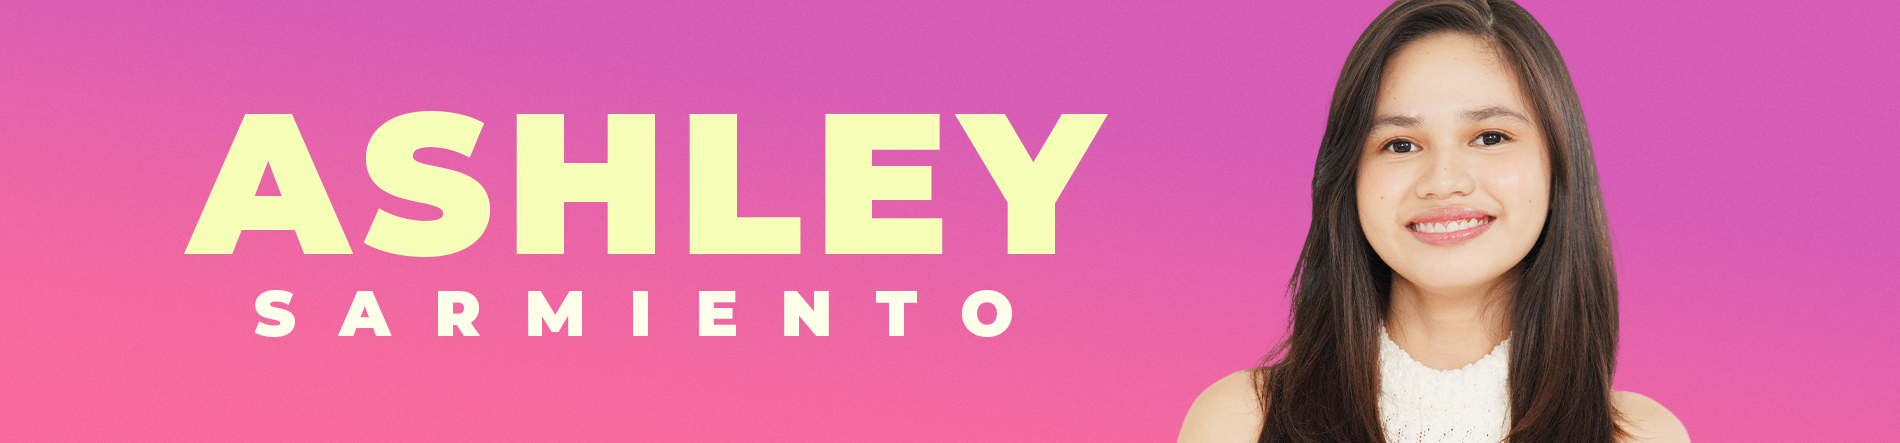 Ashley Sarmiento Desktop Banner